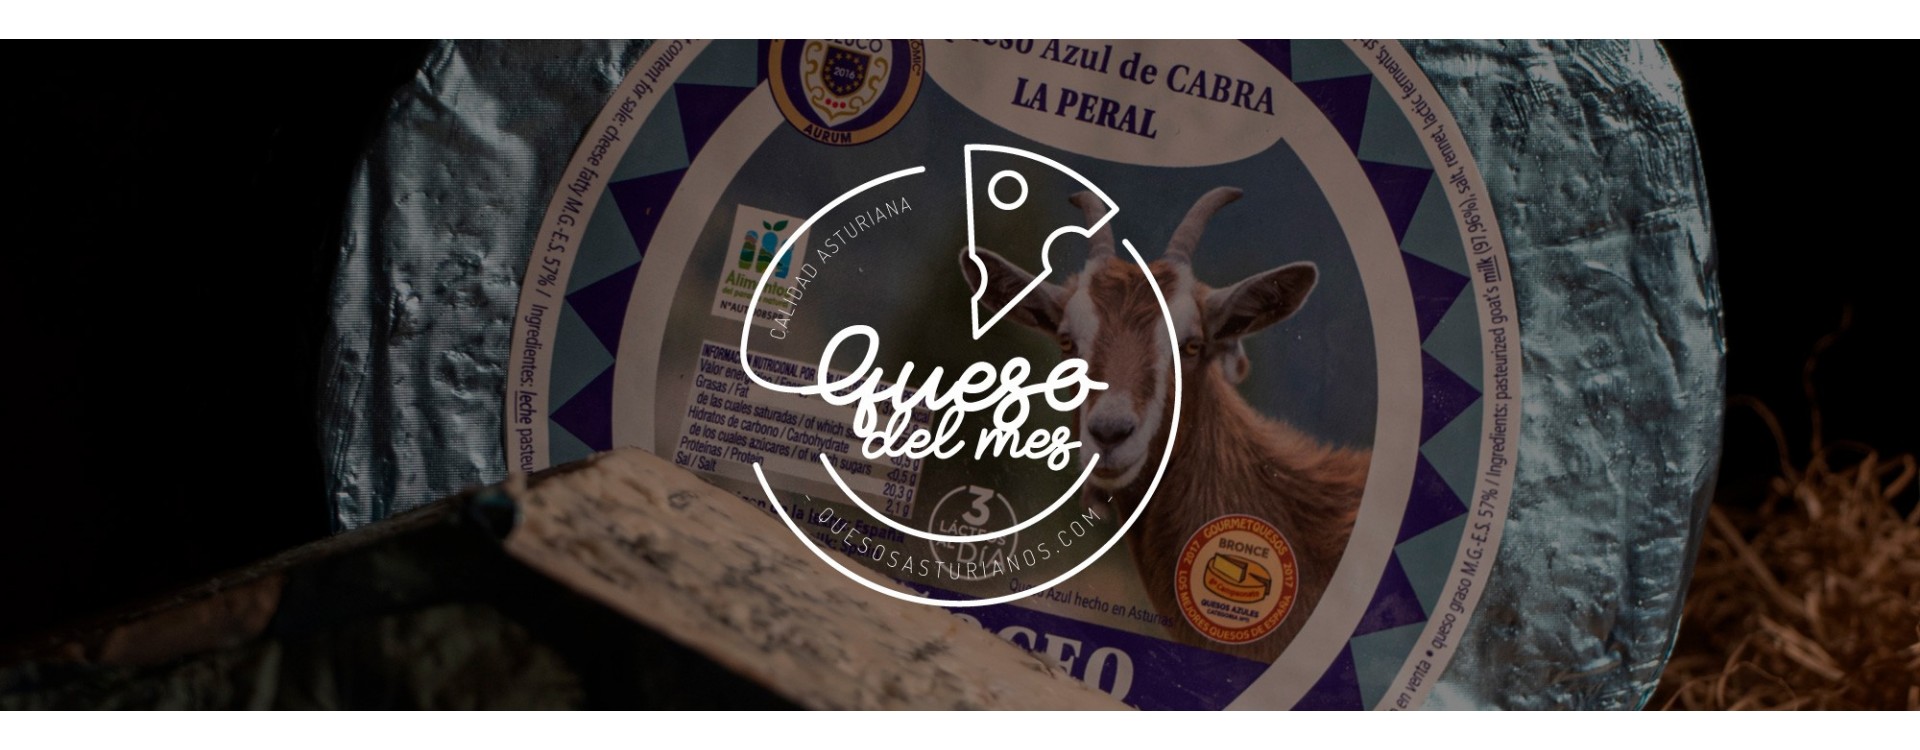 Quesos del Mes de Abril: Peñoceo, el azul de cabra de La Peral